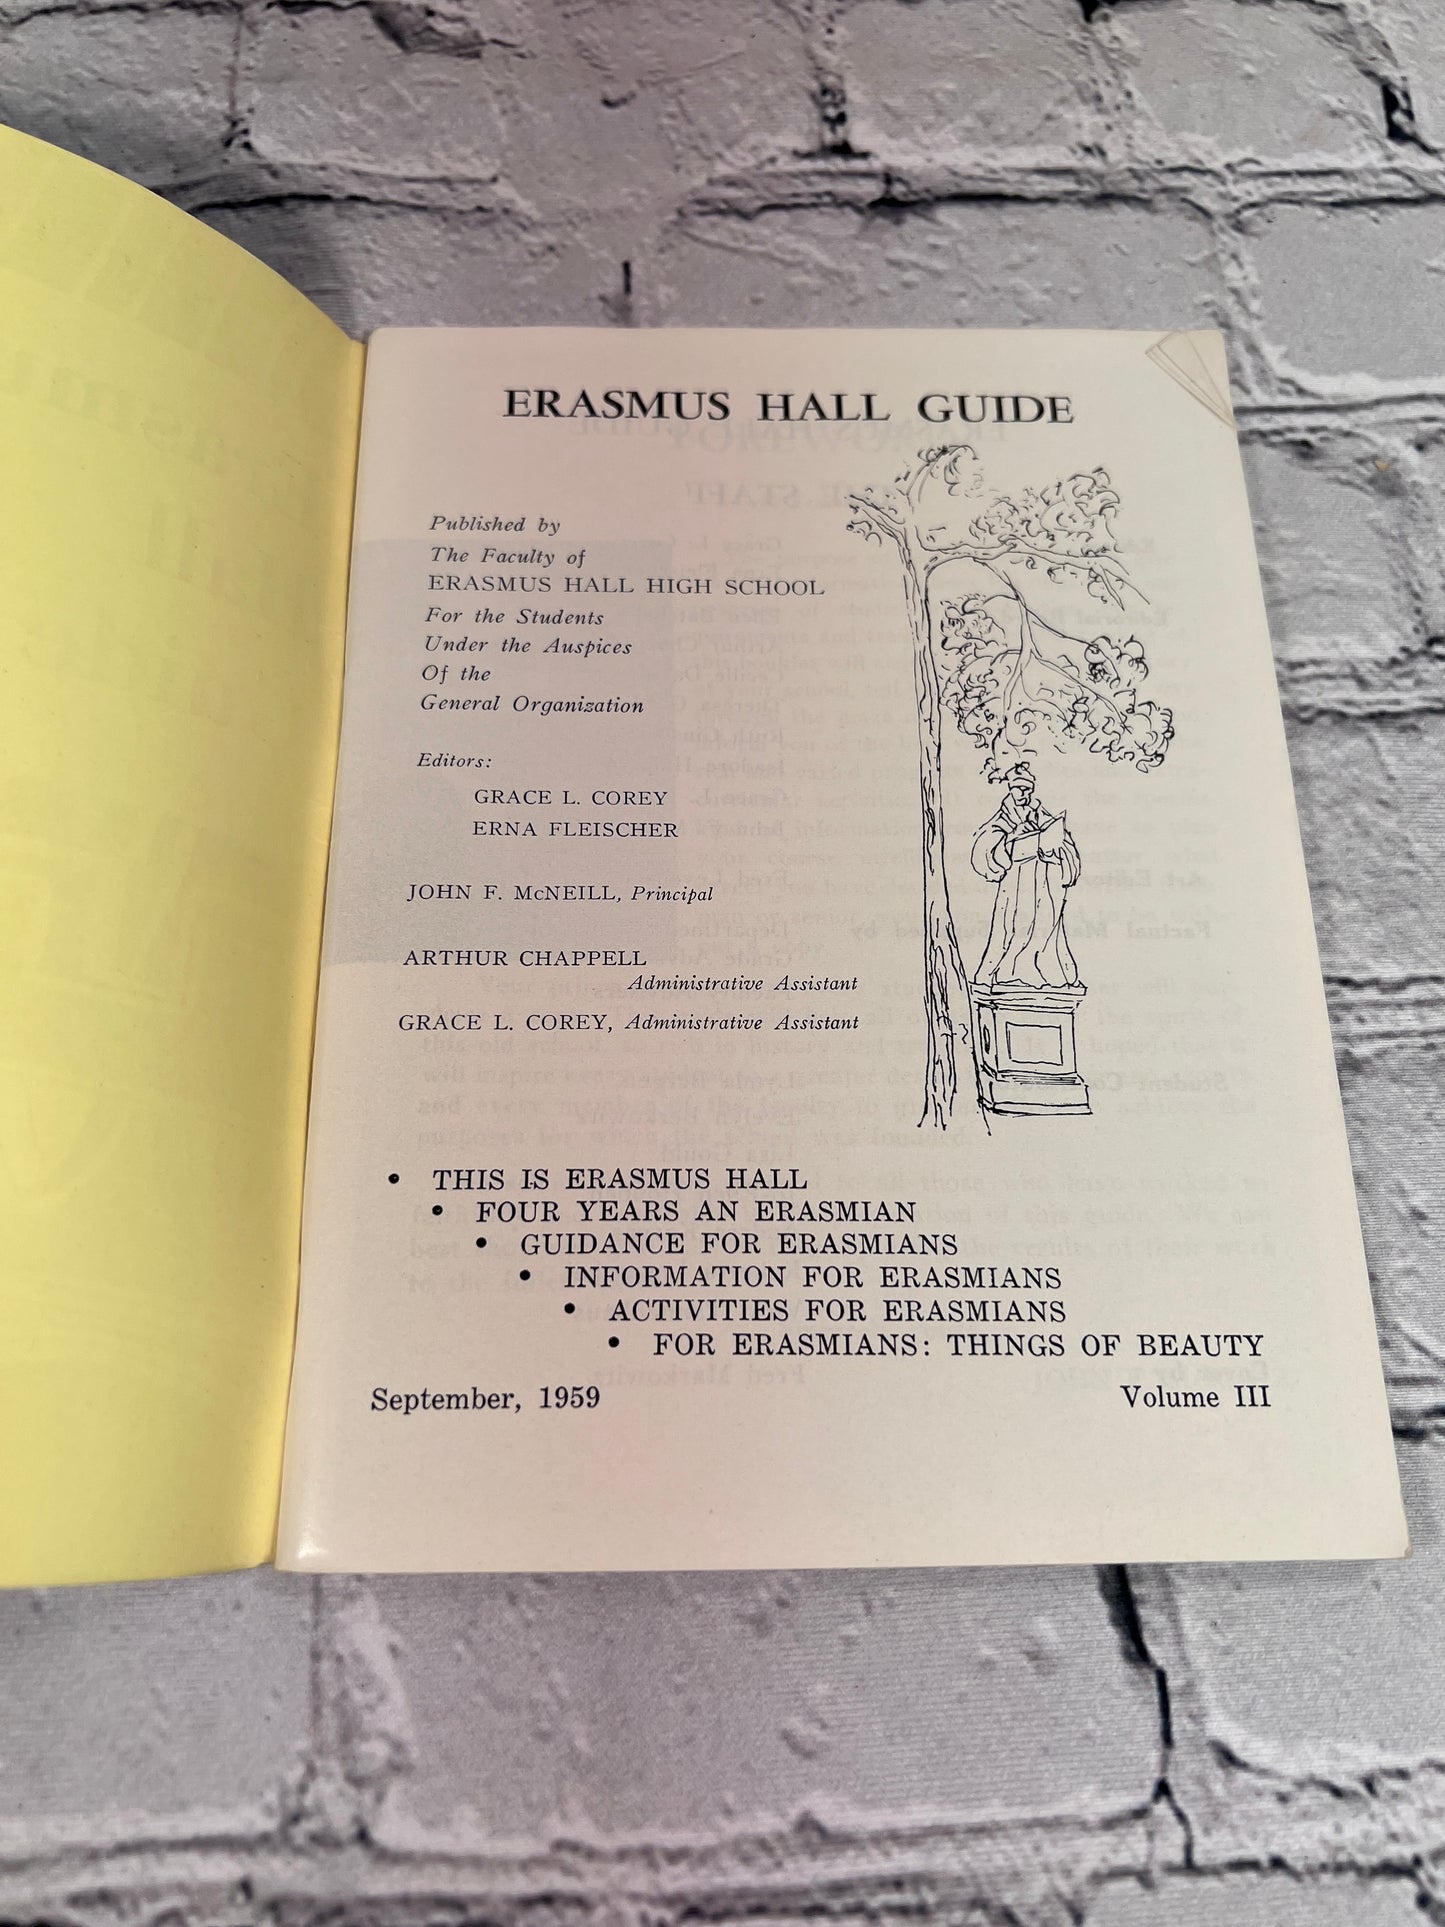 Erasmus Hall Guide, Grace L. Corey and Erna Fleischer, September 1959 Vol. III